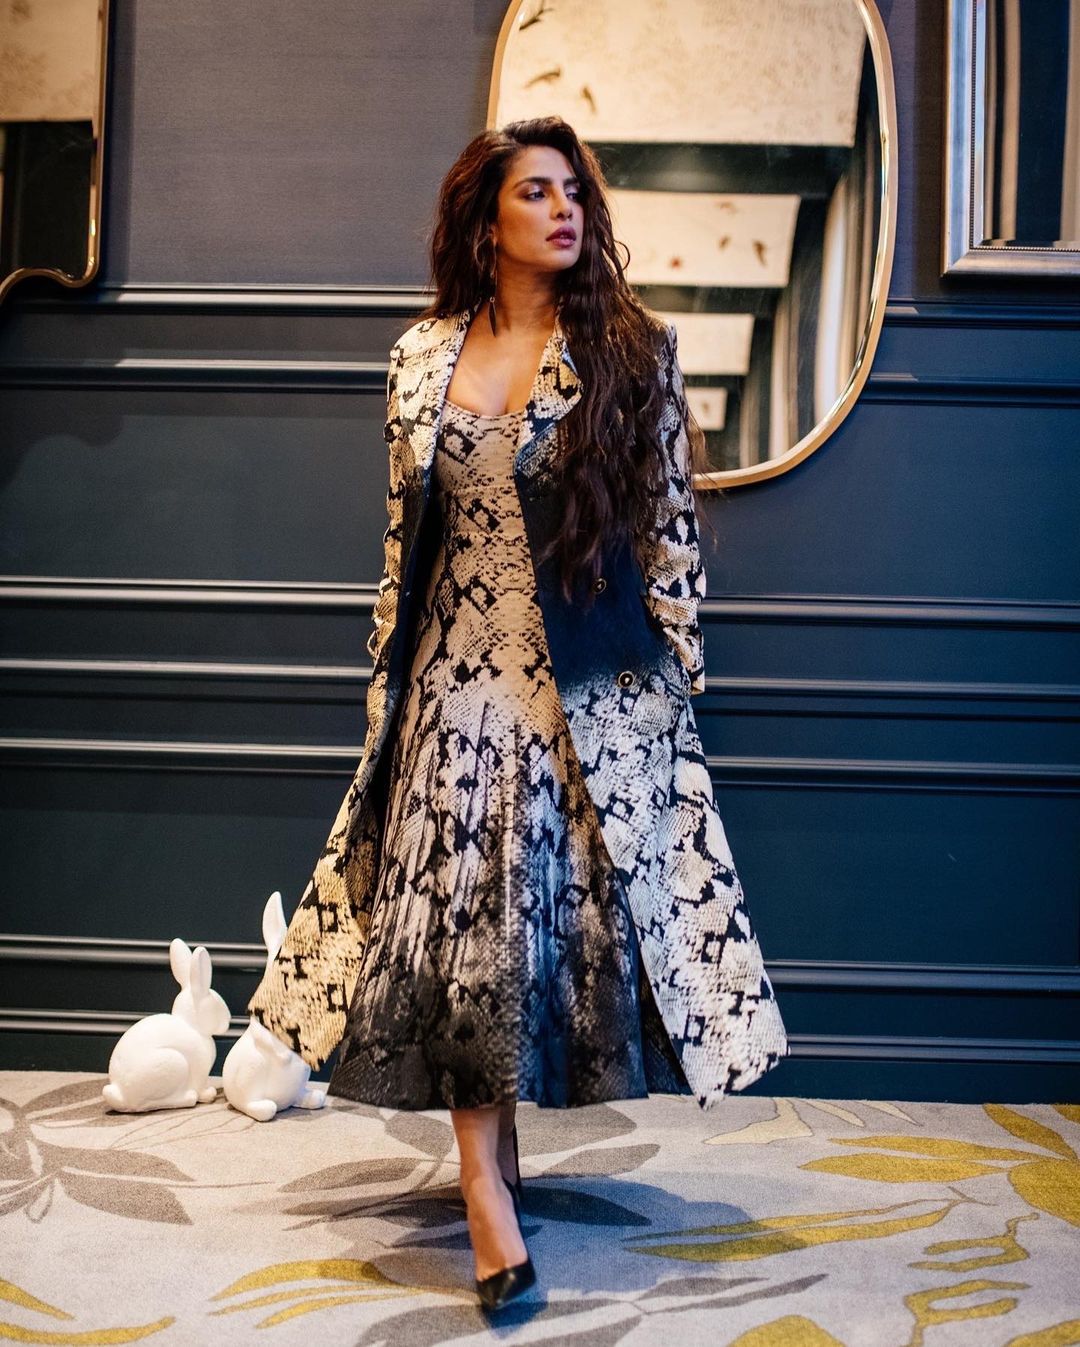 Priyanka Chopra looks elegant in the midi dress with a matching coat.